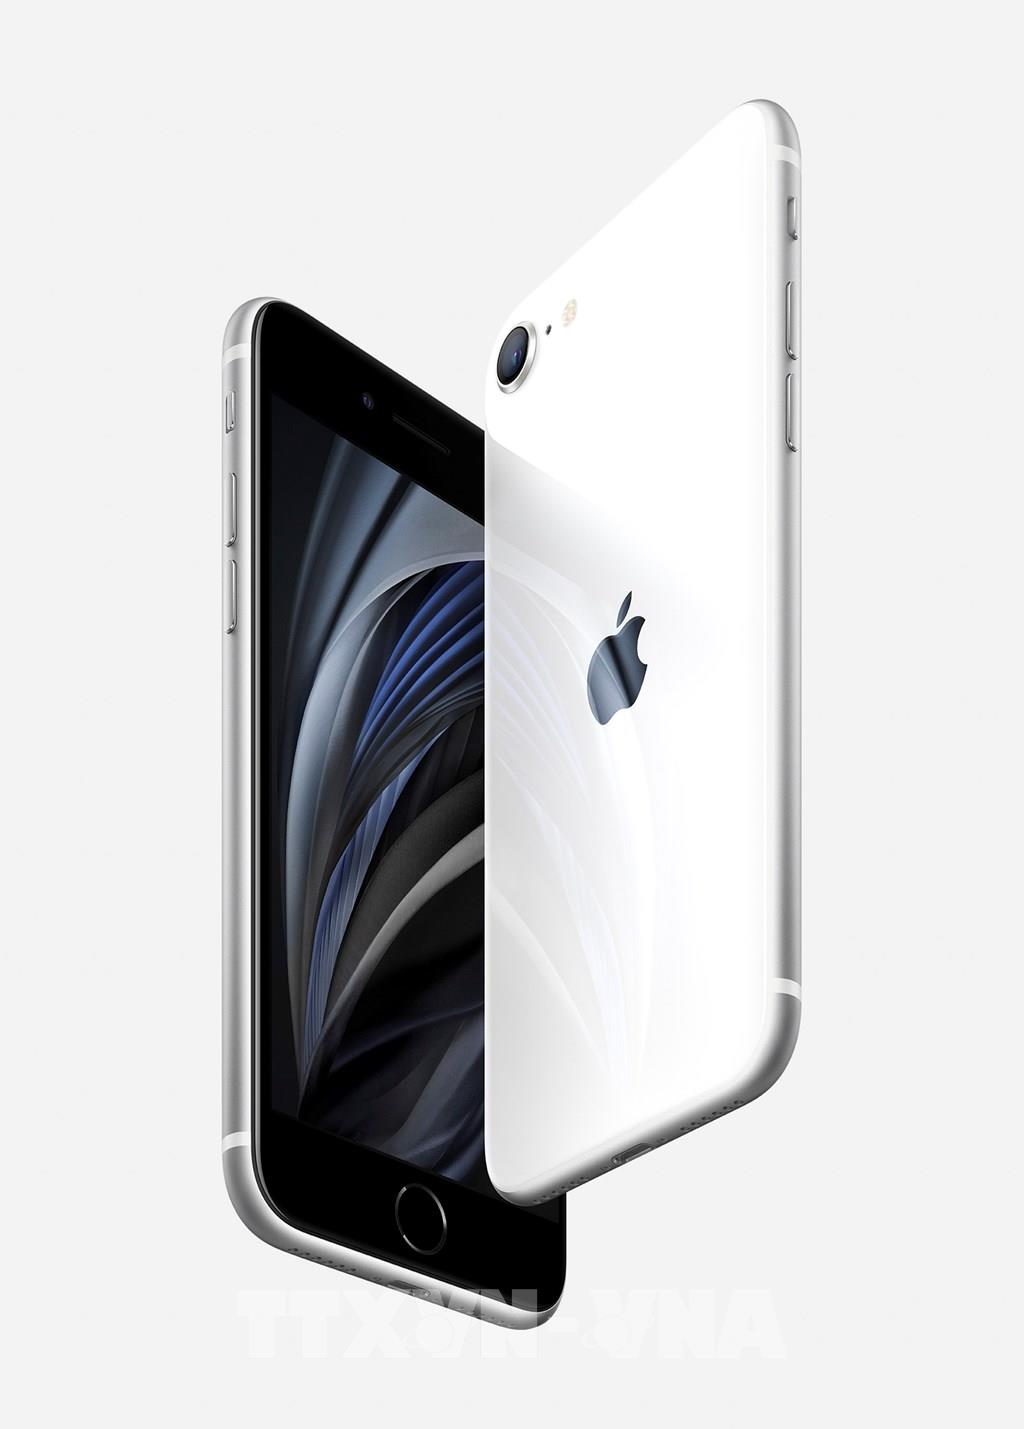 iPhone 8 sẽ cho phép đặt hàng từ ngày 15/9, bán ra từ ngày 22/9 sau khi ra  mắt - Blogs các sản phẩm công nghệ zShop.vn